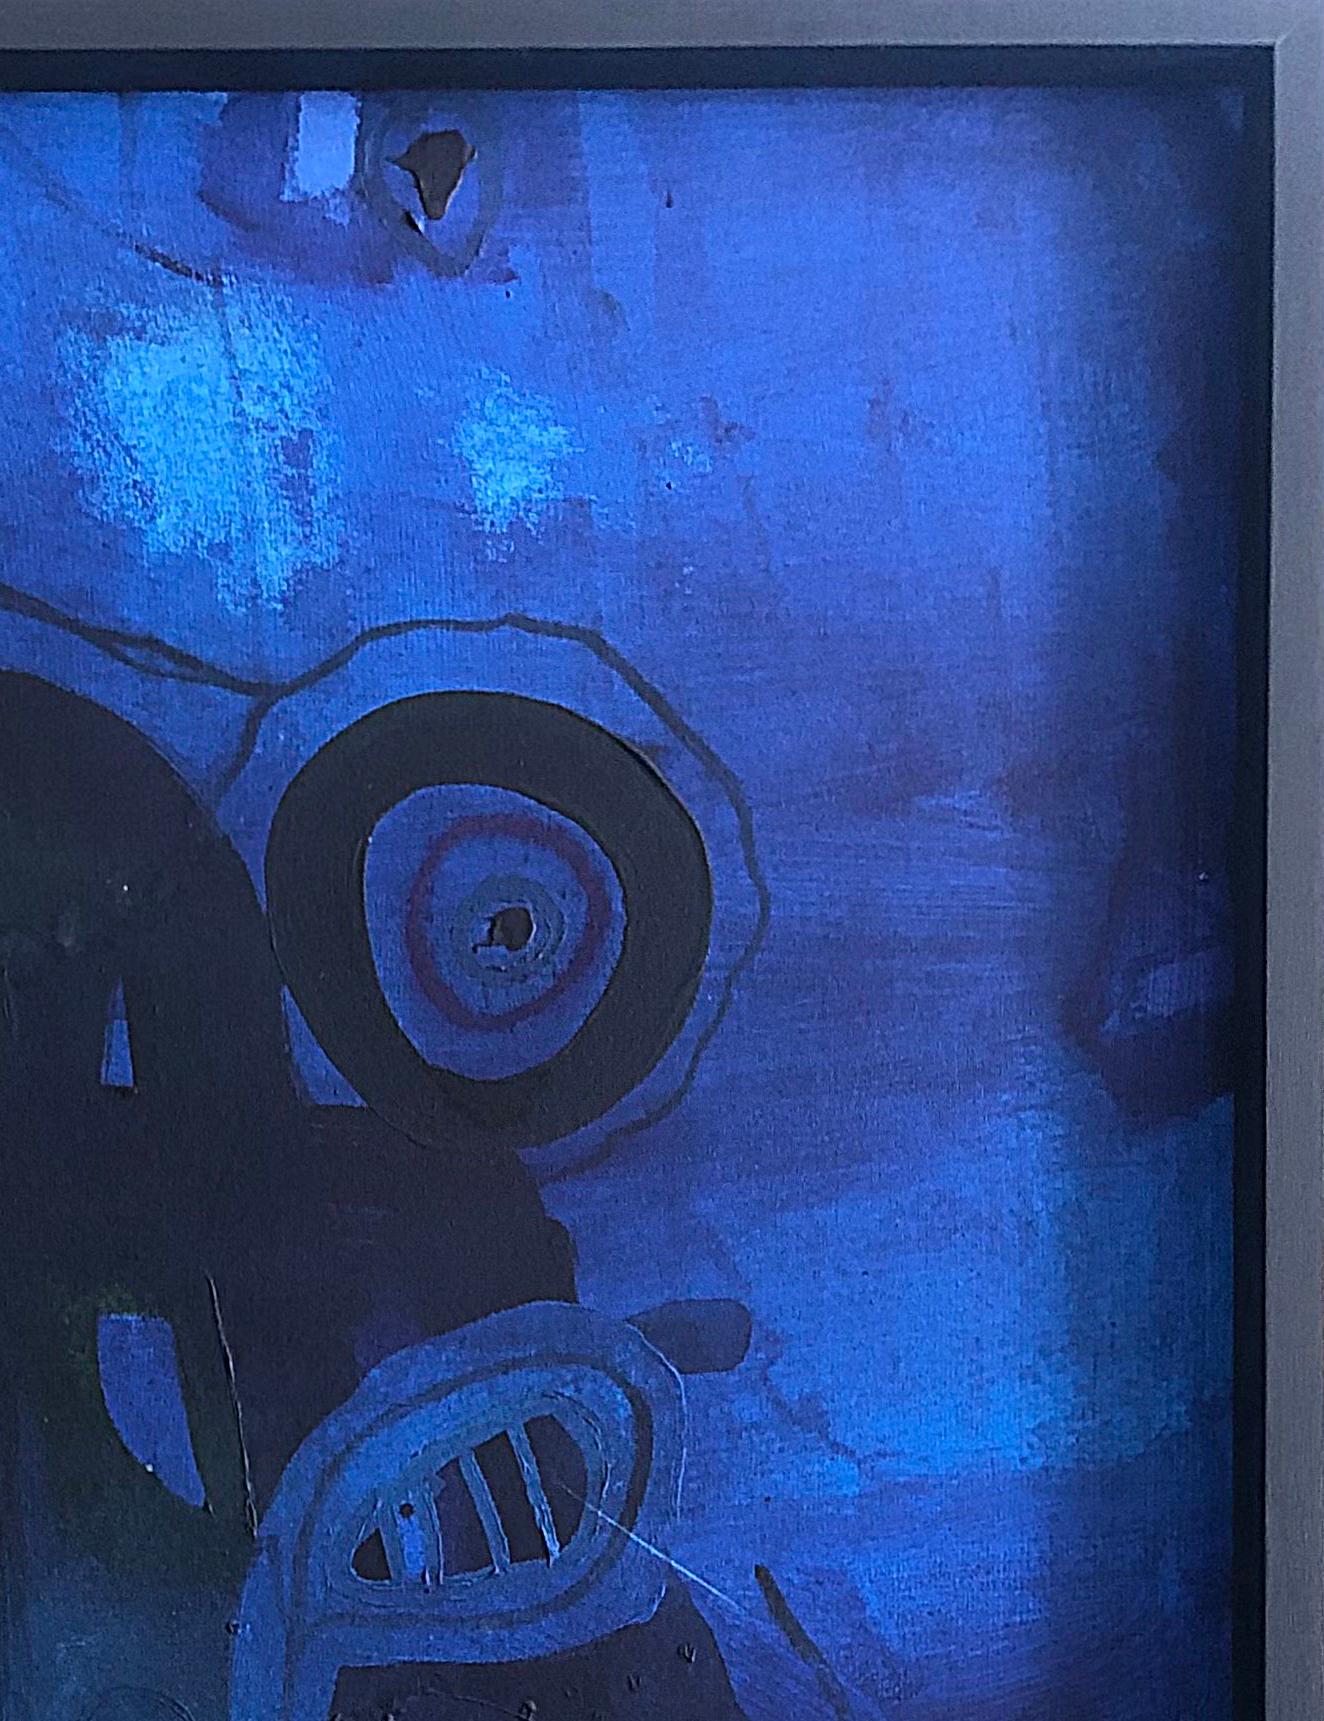 AZULES 1 & 2 Diptychon, 2021 von Alec Franco
Gemischter Umschlag auf rustikaler Leinwand
Gemischte Technik (Acryl und Ölpastell) auf Leinwand
Gesamtgröße: 117 cm H x 172 cm B
Bildgröße: 117 cm H x 86 cm B
Gerahmt
Unterzeichnet von der 